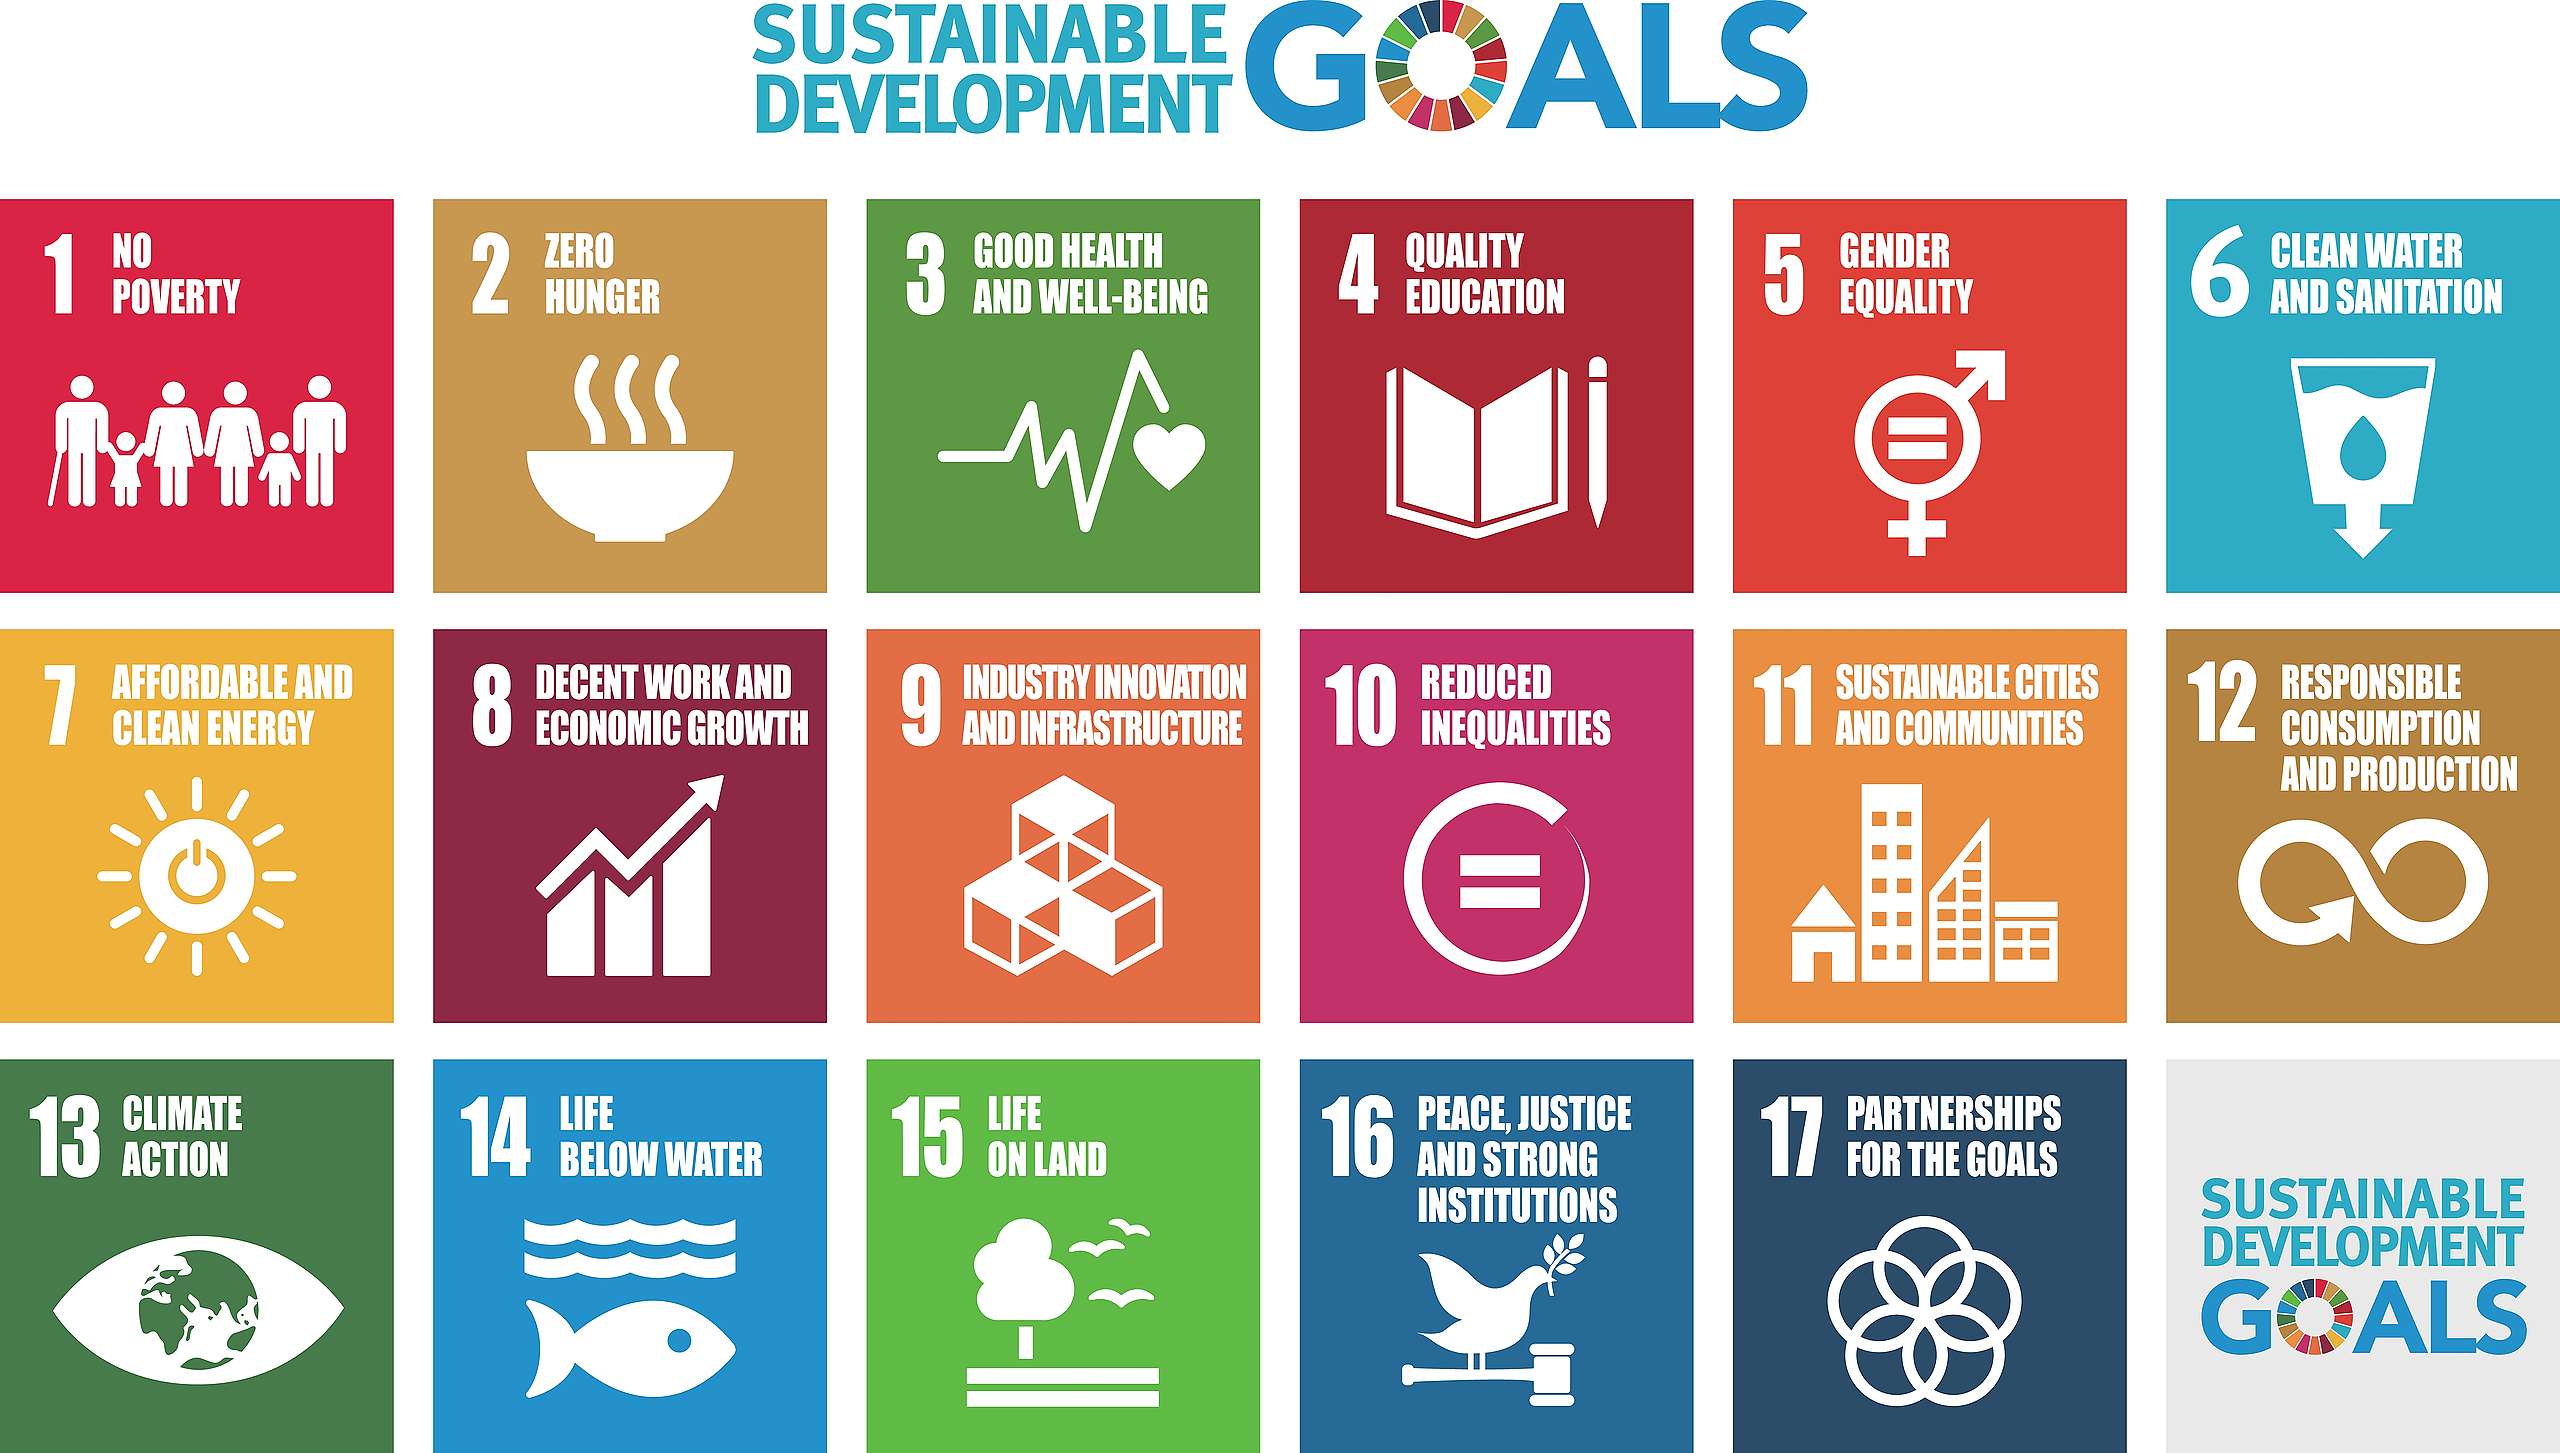 聯合國於2015年針對全人類共同面臨的挑戰，提出SDGs（永續發展目標）作為2030年全球推動永續發展的指導方針，內容包含消除貧窮及飢餓、實現性別平等、減緩氣候變遷、保育自然環境、提升永續發展的執行方法等目標。